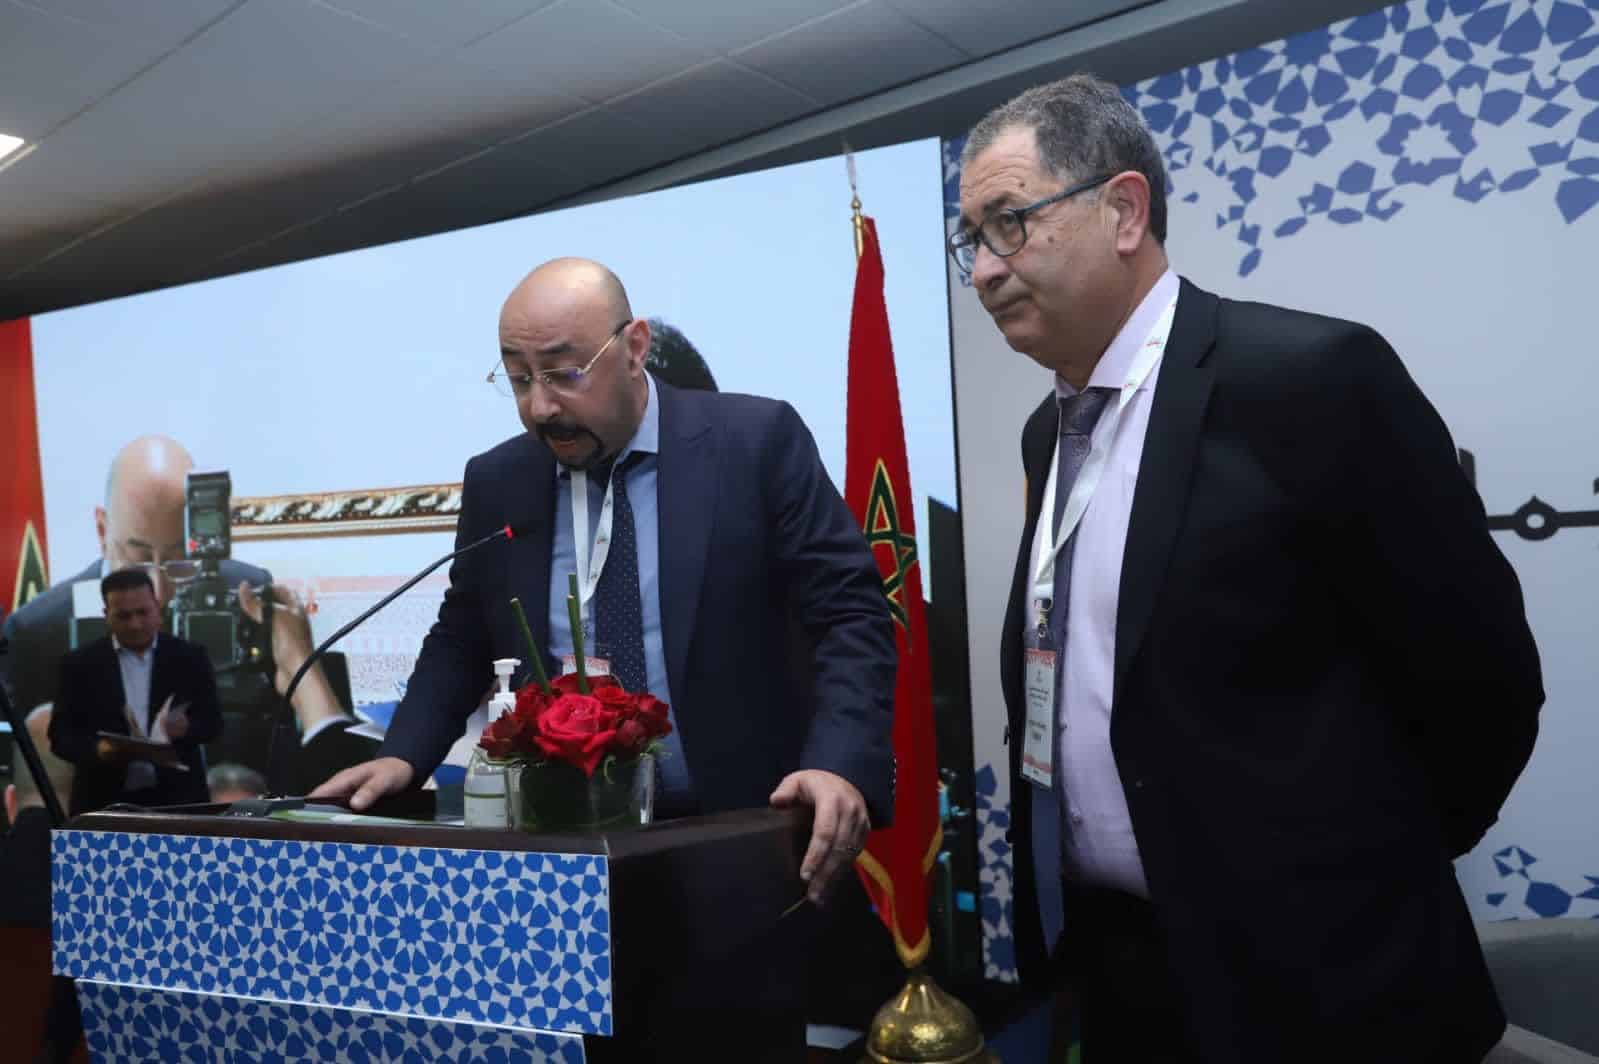 الليموري: المغرب نواة للمبادرات الإفريقية الناجحة وإدراج المدن والجماعات بالتنمية واجب